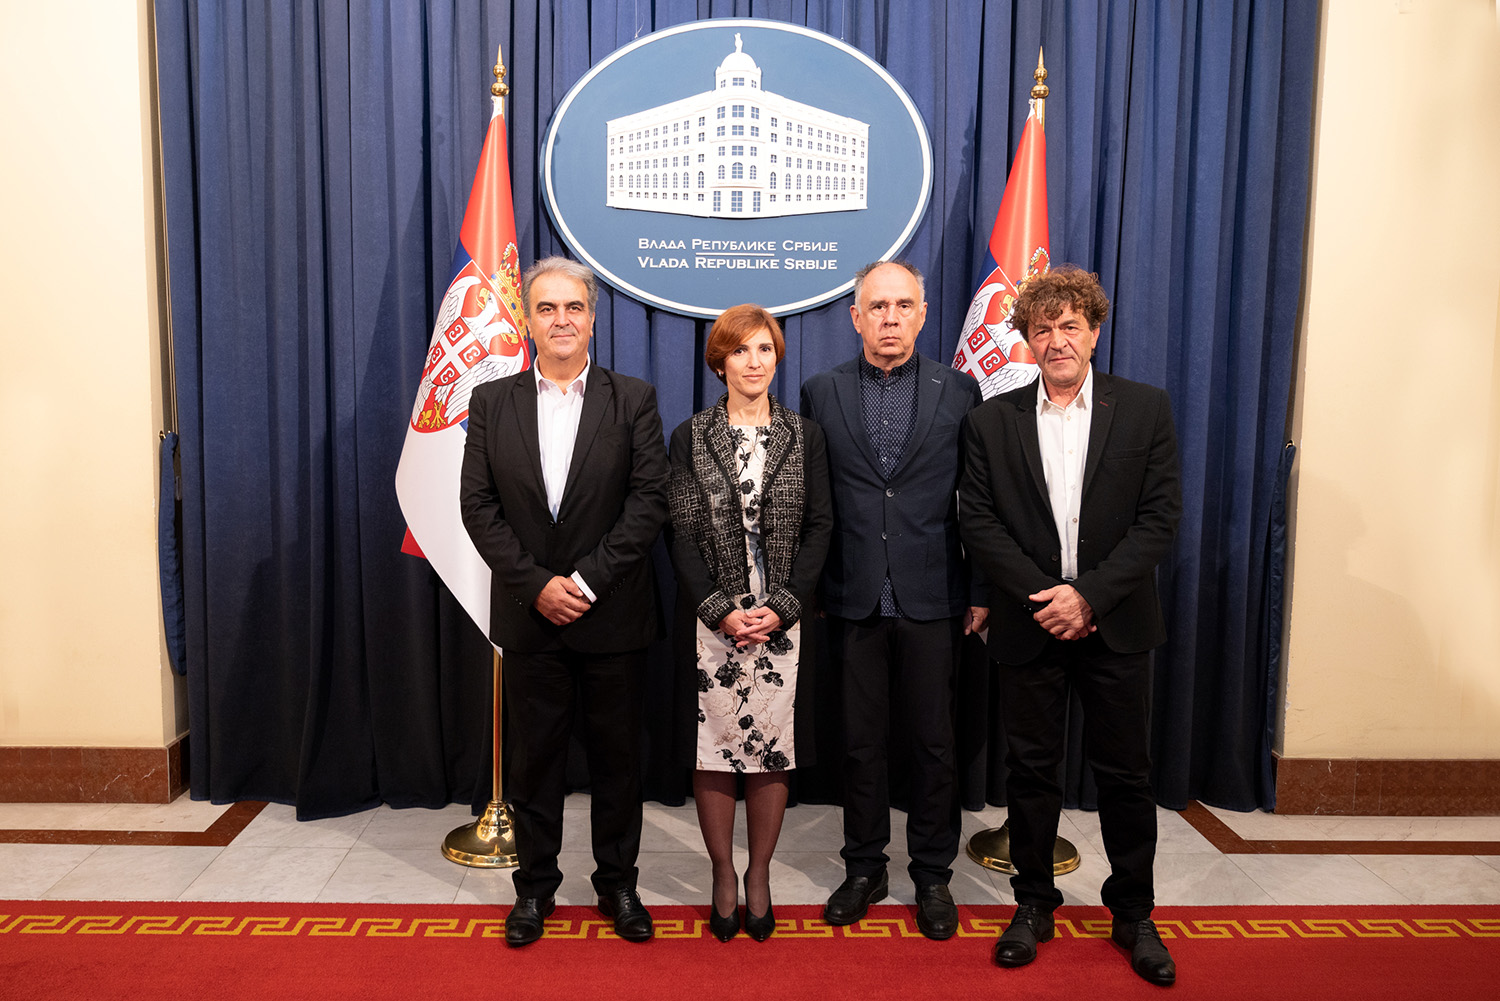 Потписан Протокол о сарадњи између националних театара Србије, Северне Македоније и Албаније